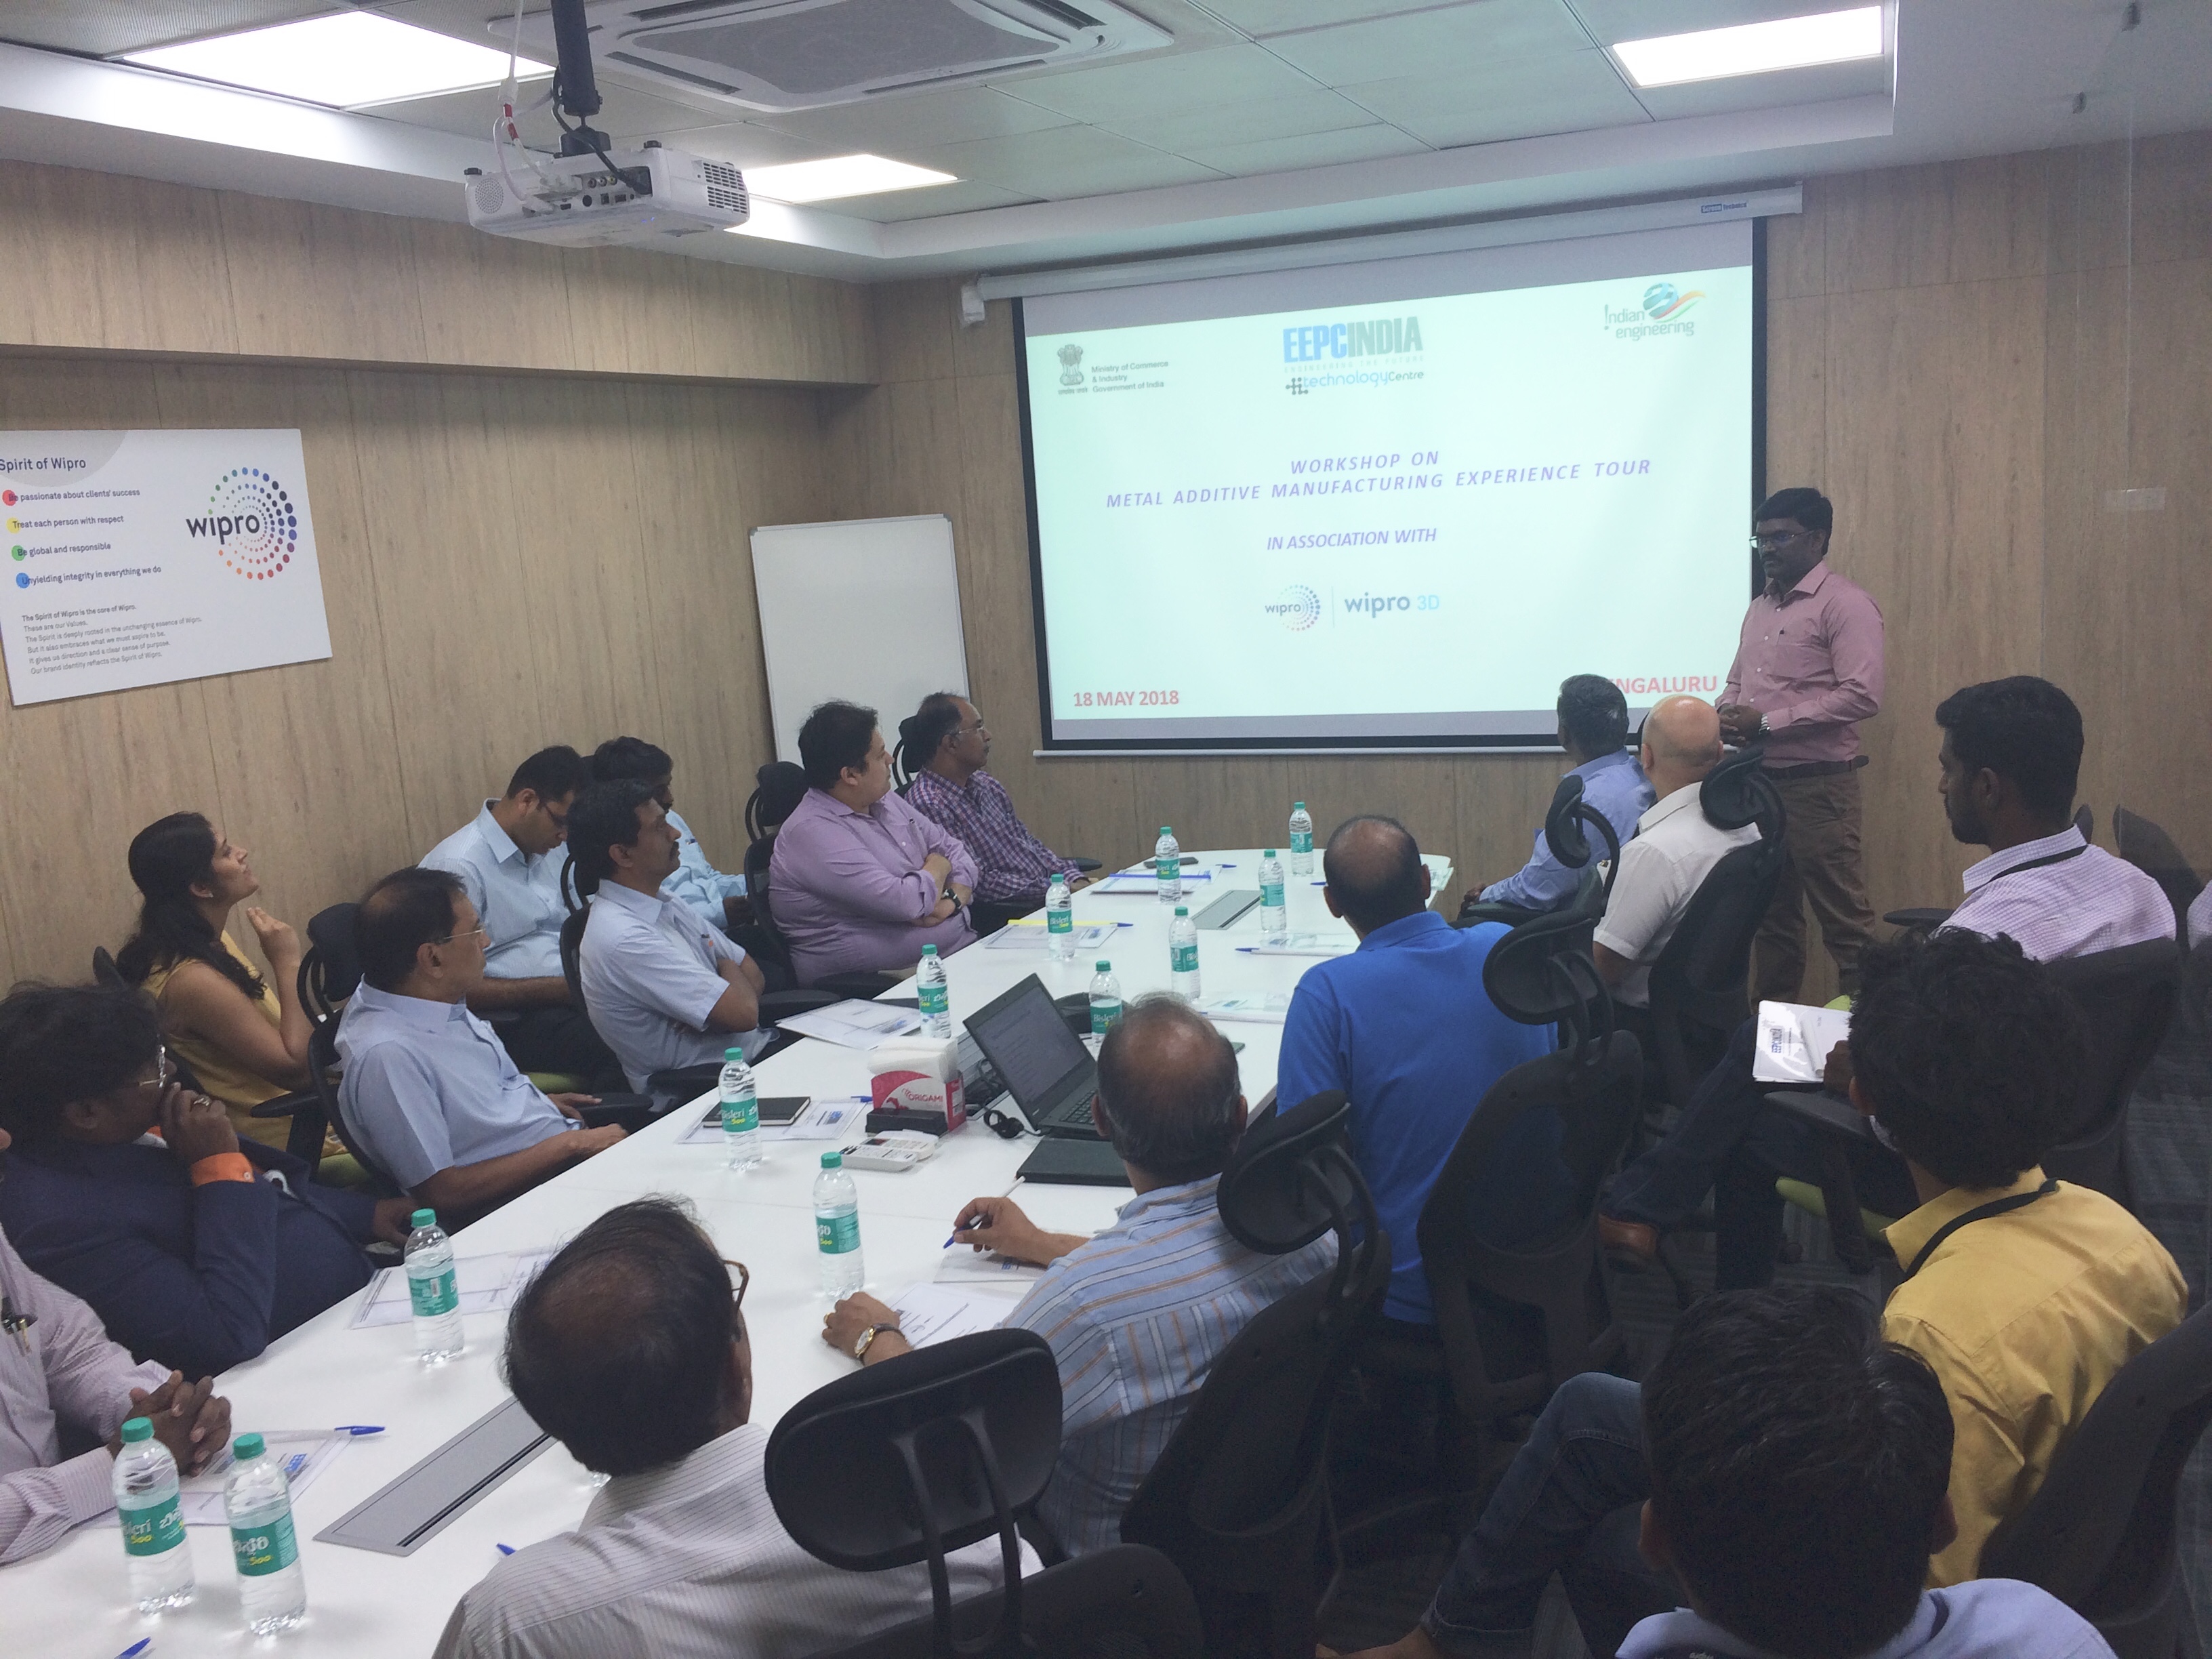 talk by D Karthikeyan - Asst Head of Technology Centre